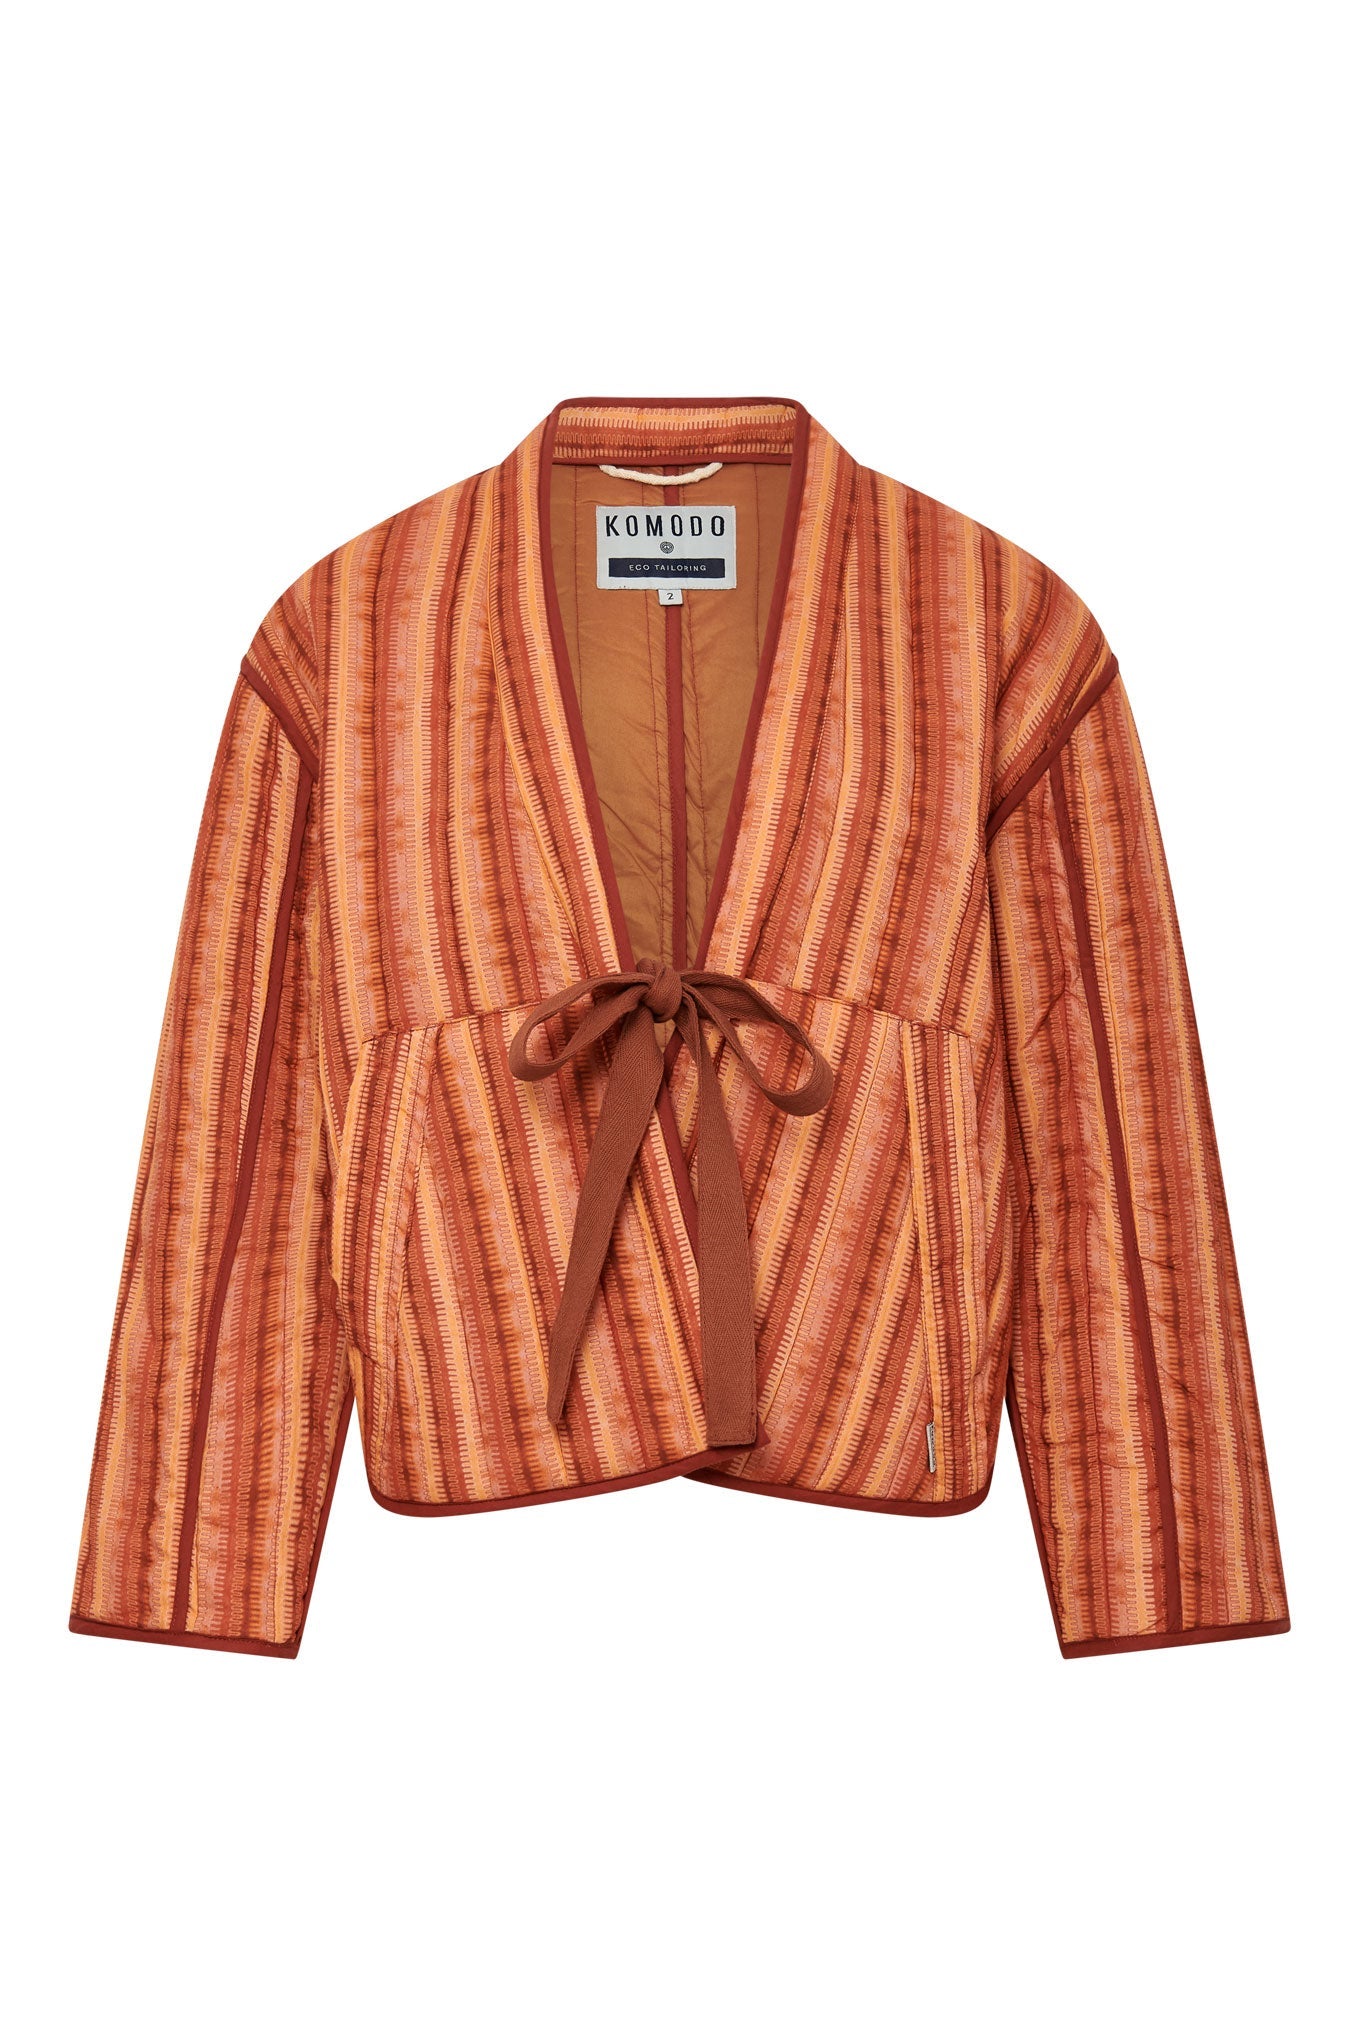 Rote Jacke Weave Stripe aus 100% Bio-Baumwolle Weave von Komodo